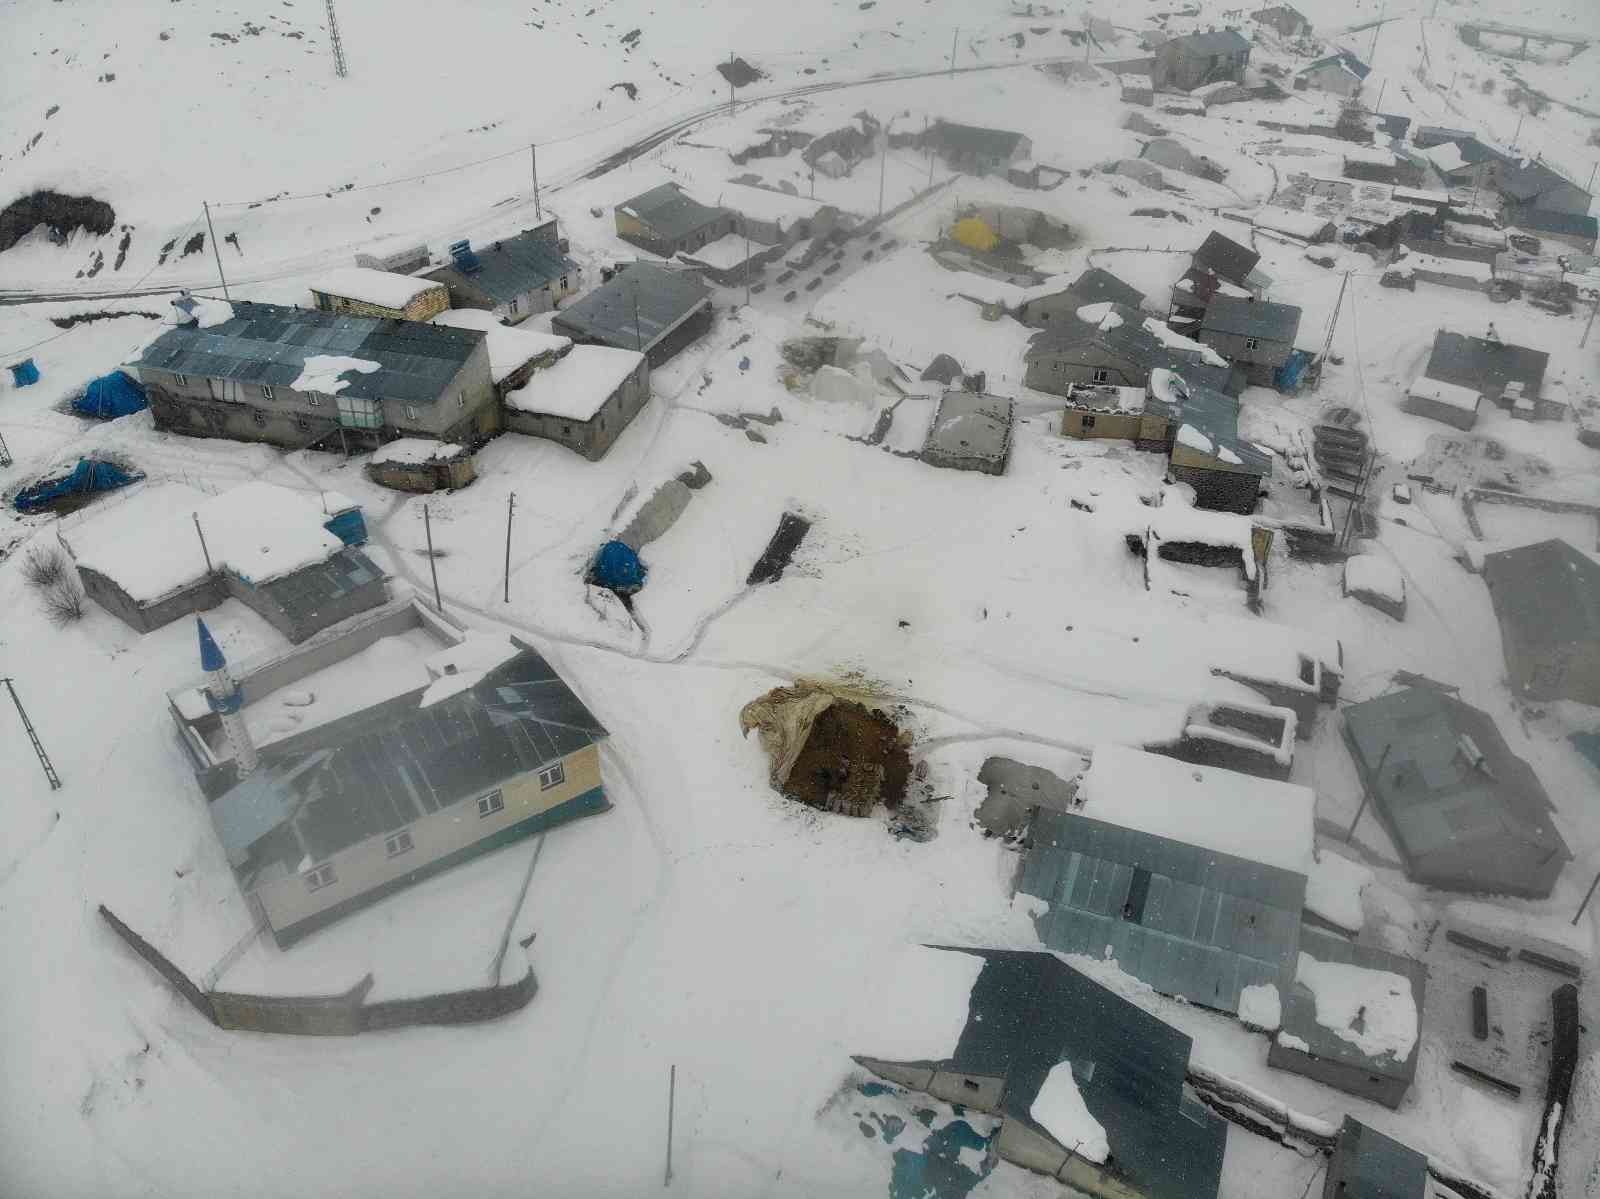 Yüksek kesimlerde evler kar altında kaldı #agri